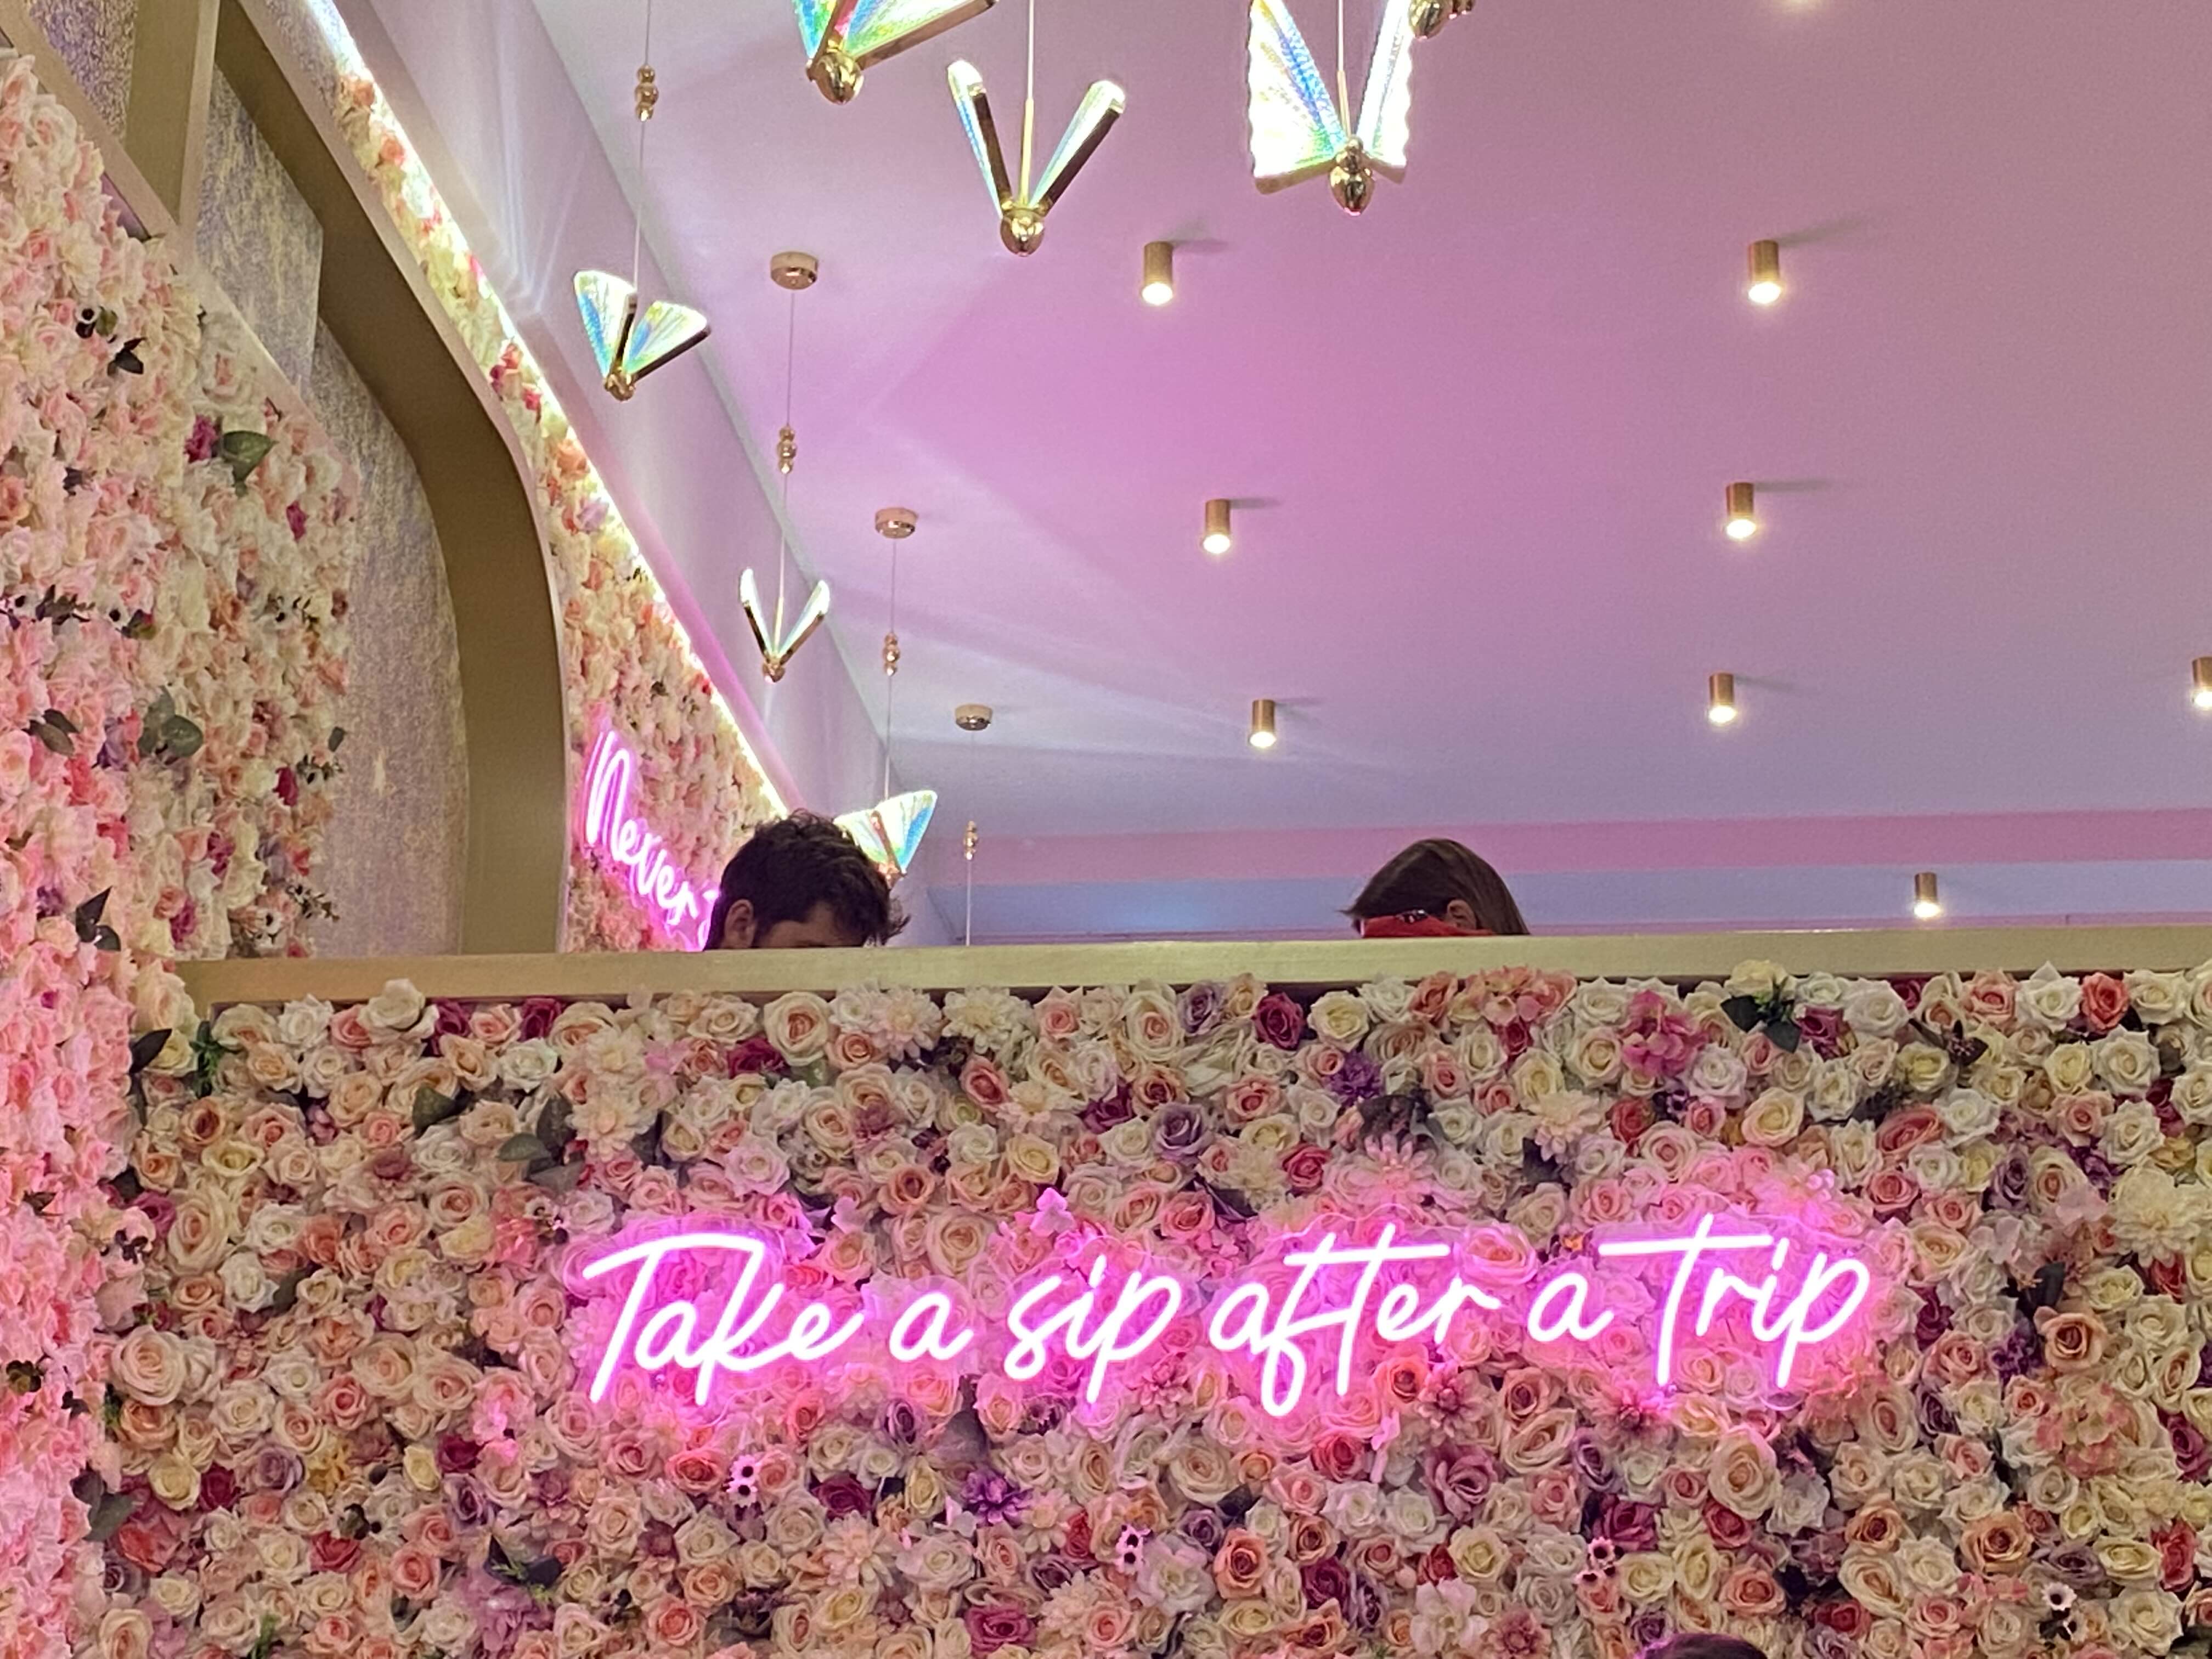 꽃-장식-벽-위-핑크-네온-글씨